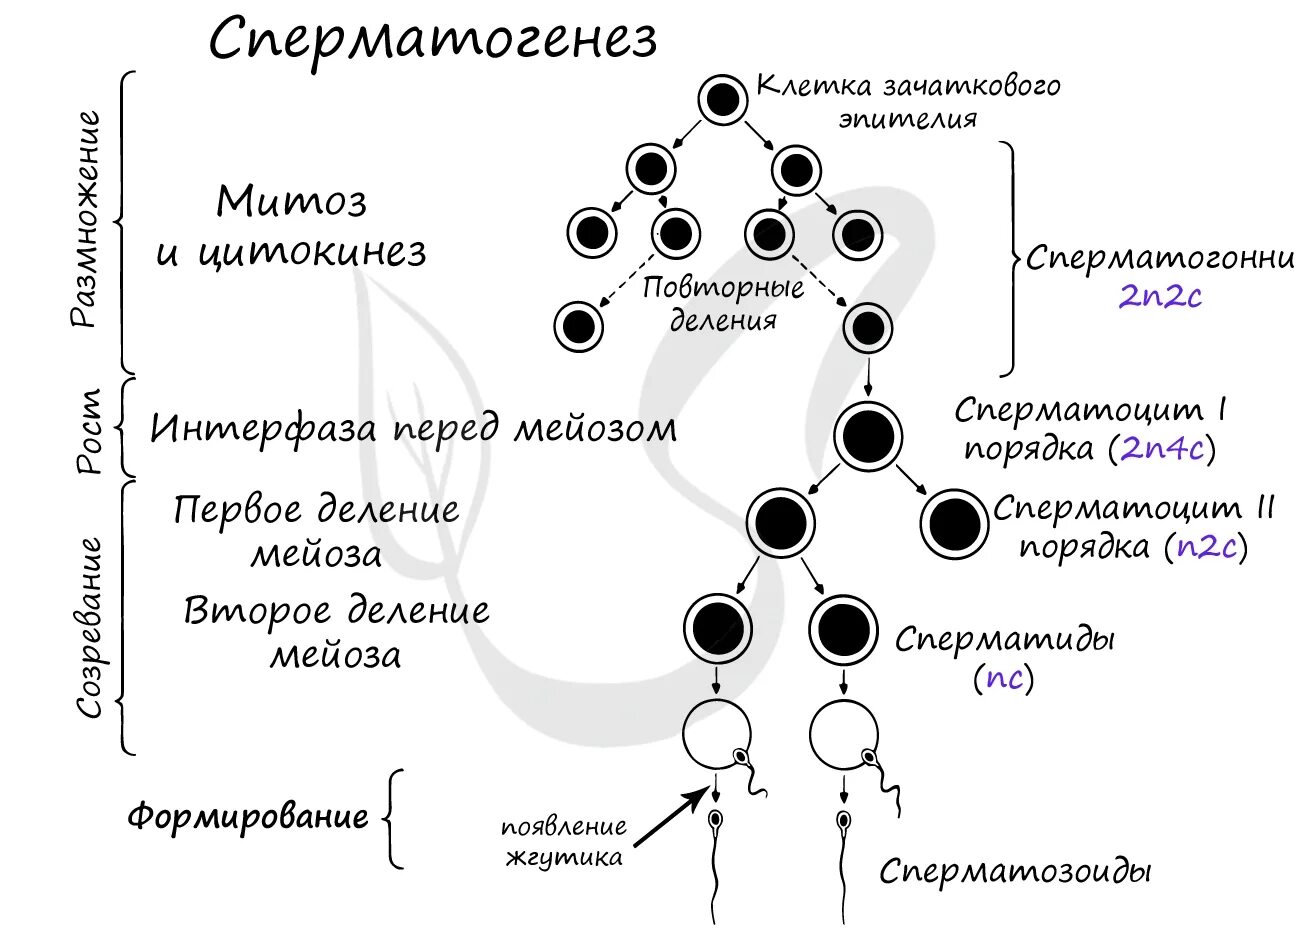 Первичные мужские половые клетки. 2. Гаметогенез. Сперматогенез. Фаза созревания сперматогенеза. Фаза размножения сперматогенеза. Схема процесса сперматогенеза.